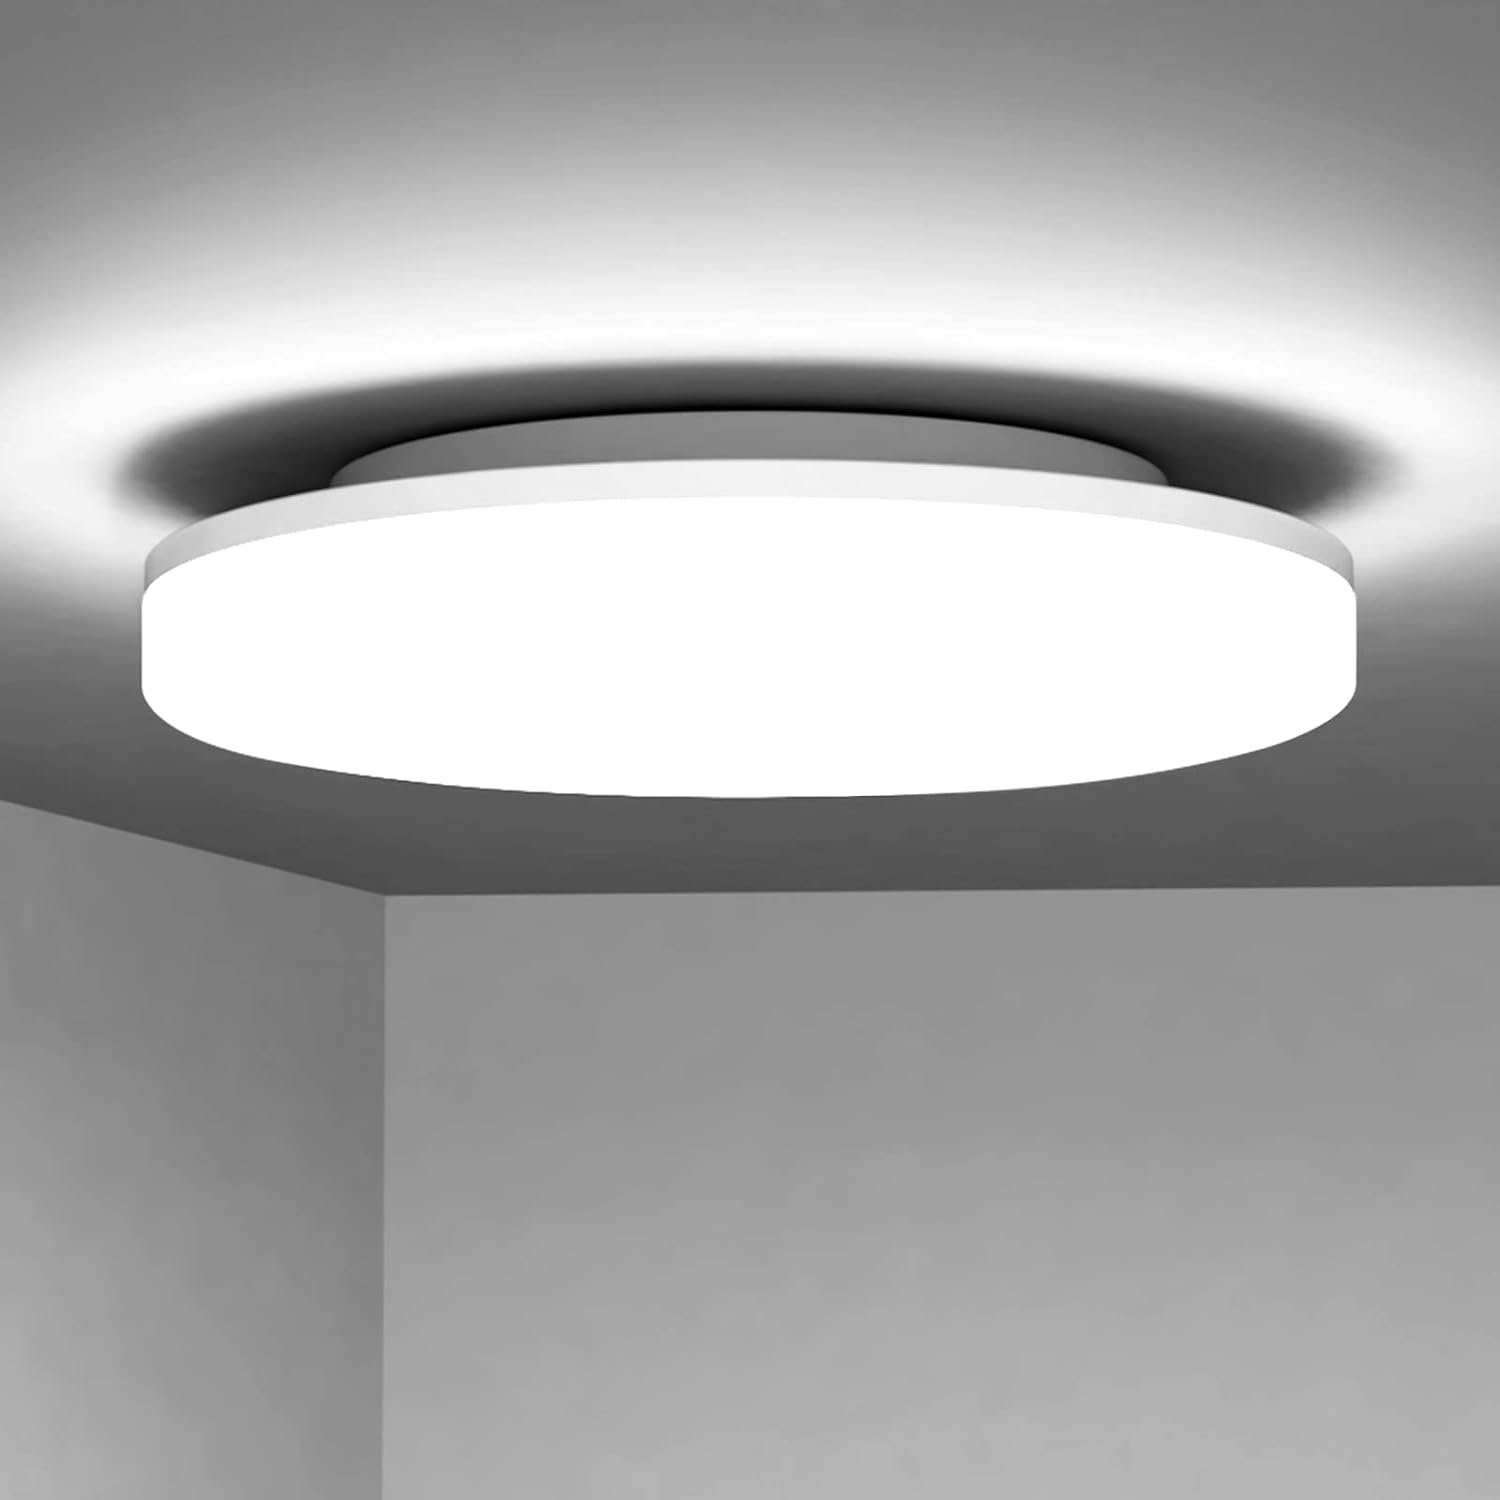 Nettlife LED Panel Deckenlampe Rund Badezimmer Decke 24W Badlampe 27*4.8CM, IP54 Wasserdicht, LED fest integriert, Kaltesweiß